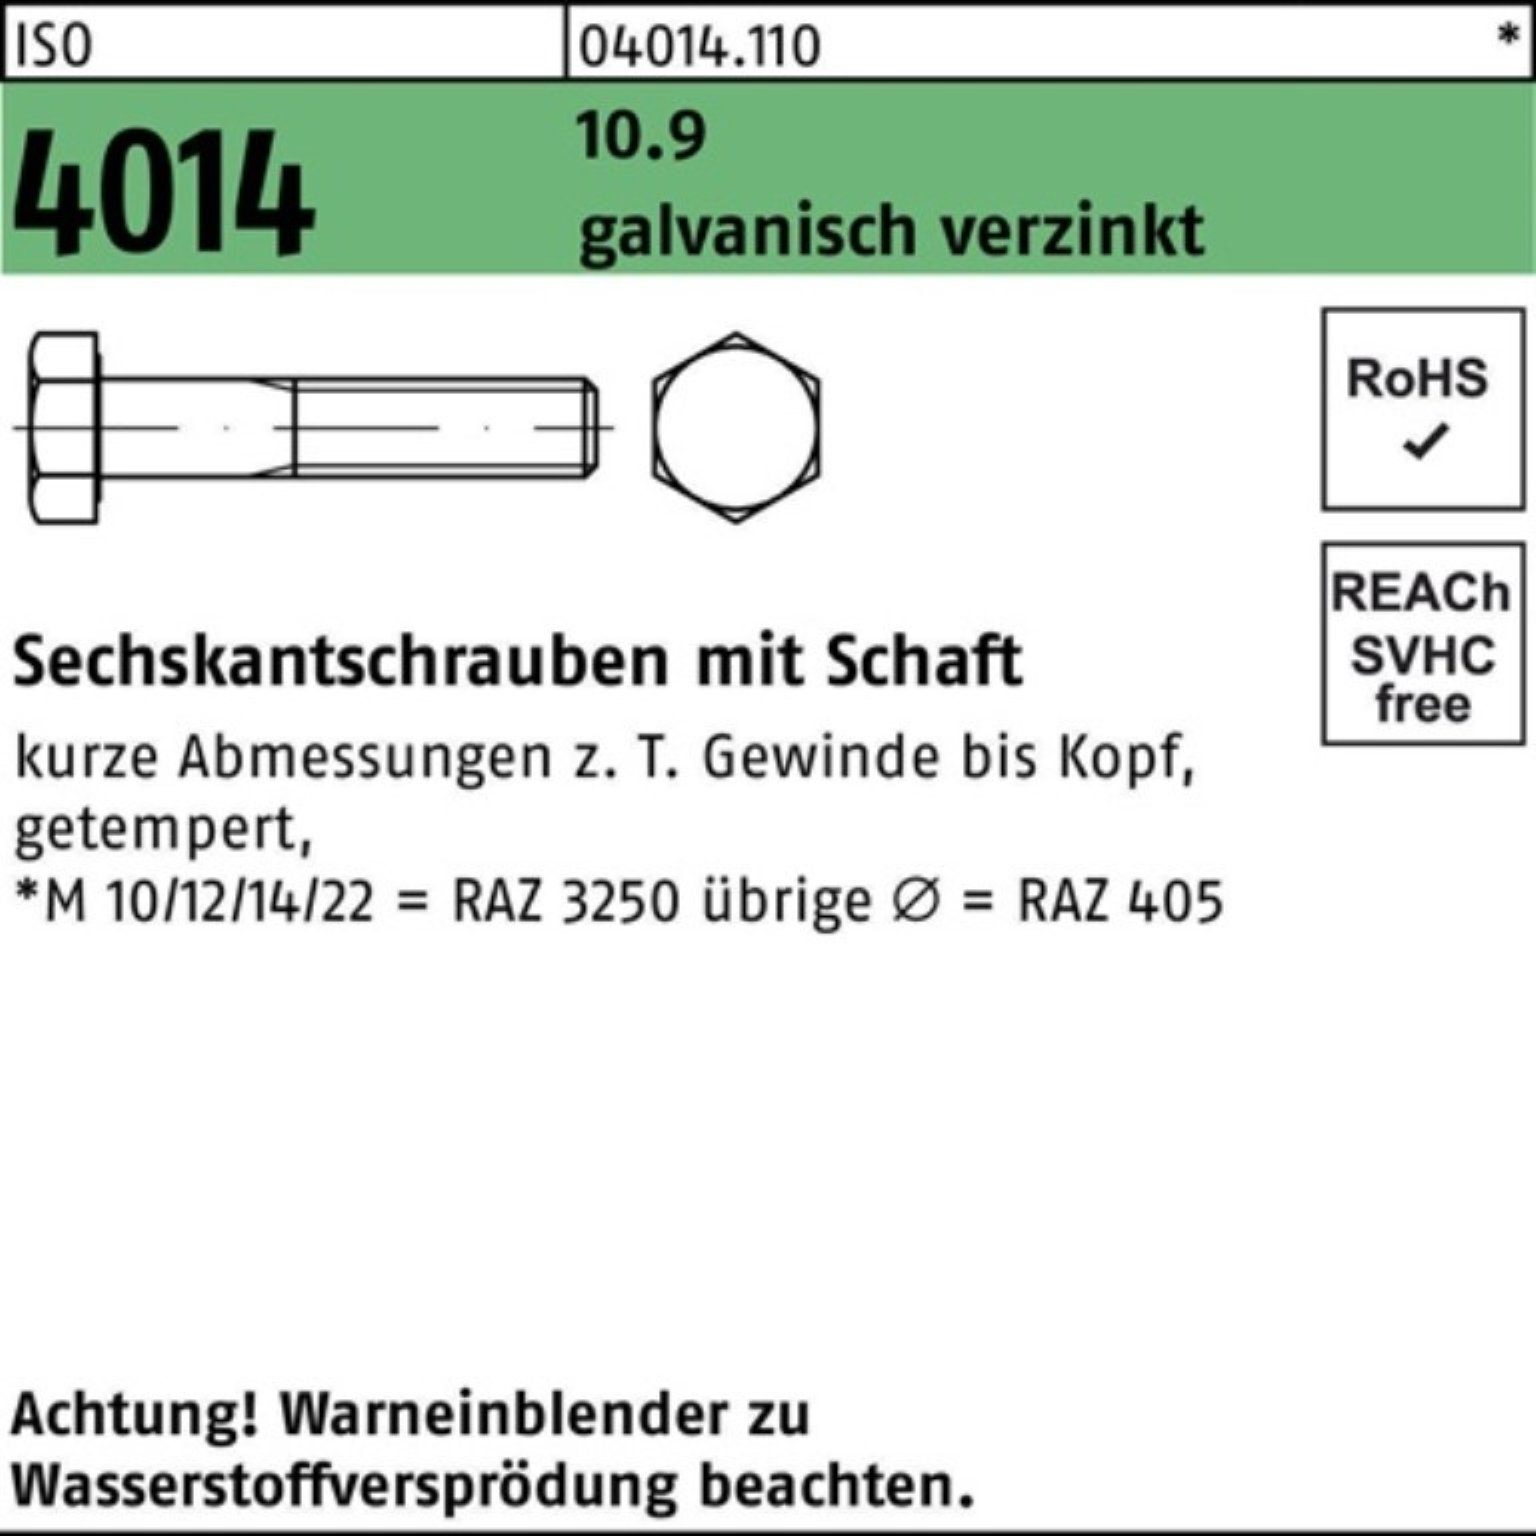 Bufab Sechskantschraube 100er 10.9 1 4014 90 galv.verz. Pack ISO M30x Schaft Sechskantschraube